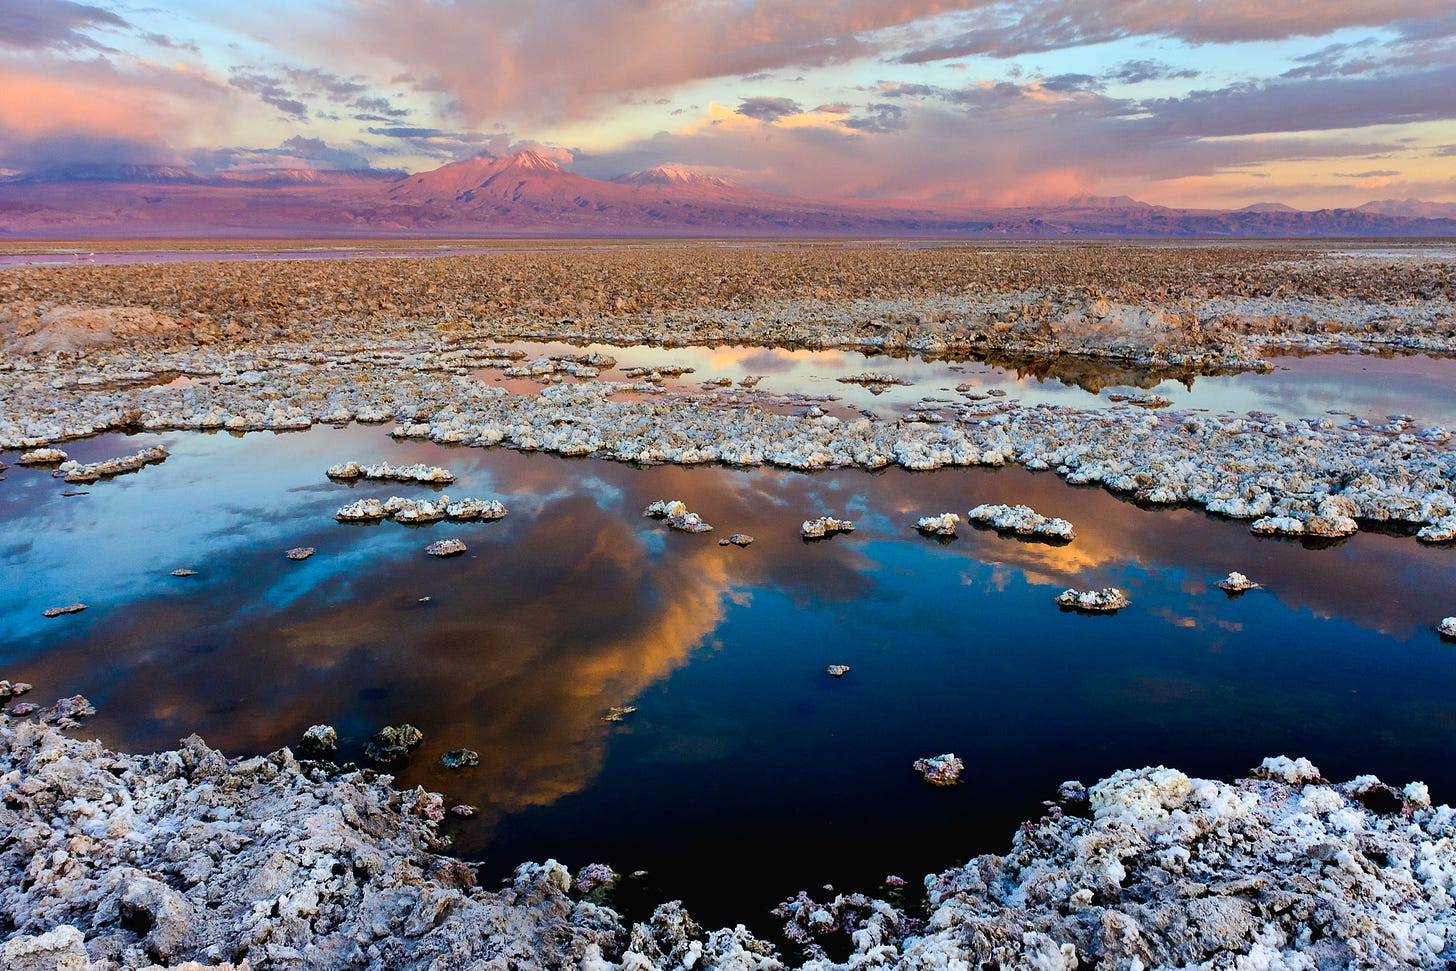 Salar de Atacama - Wikipedia, la enciclopedia libre